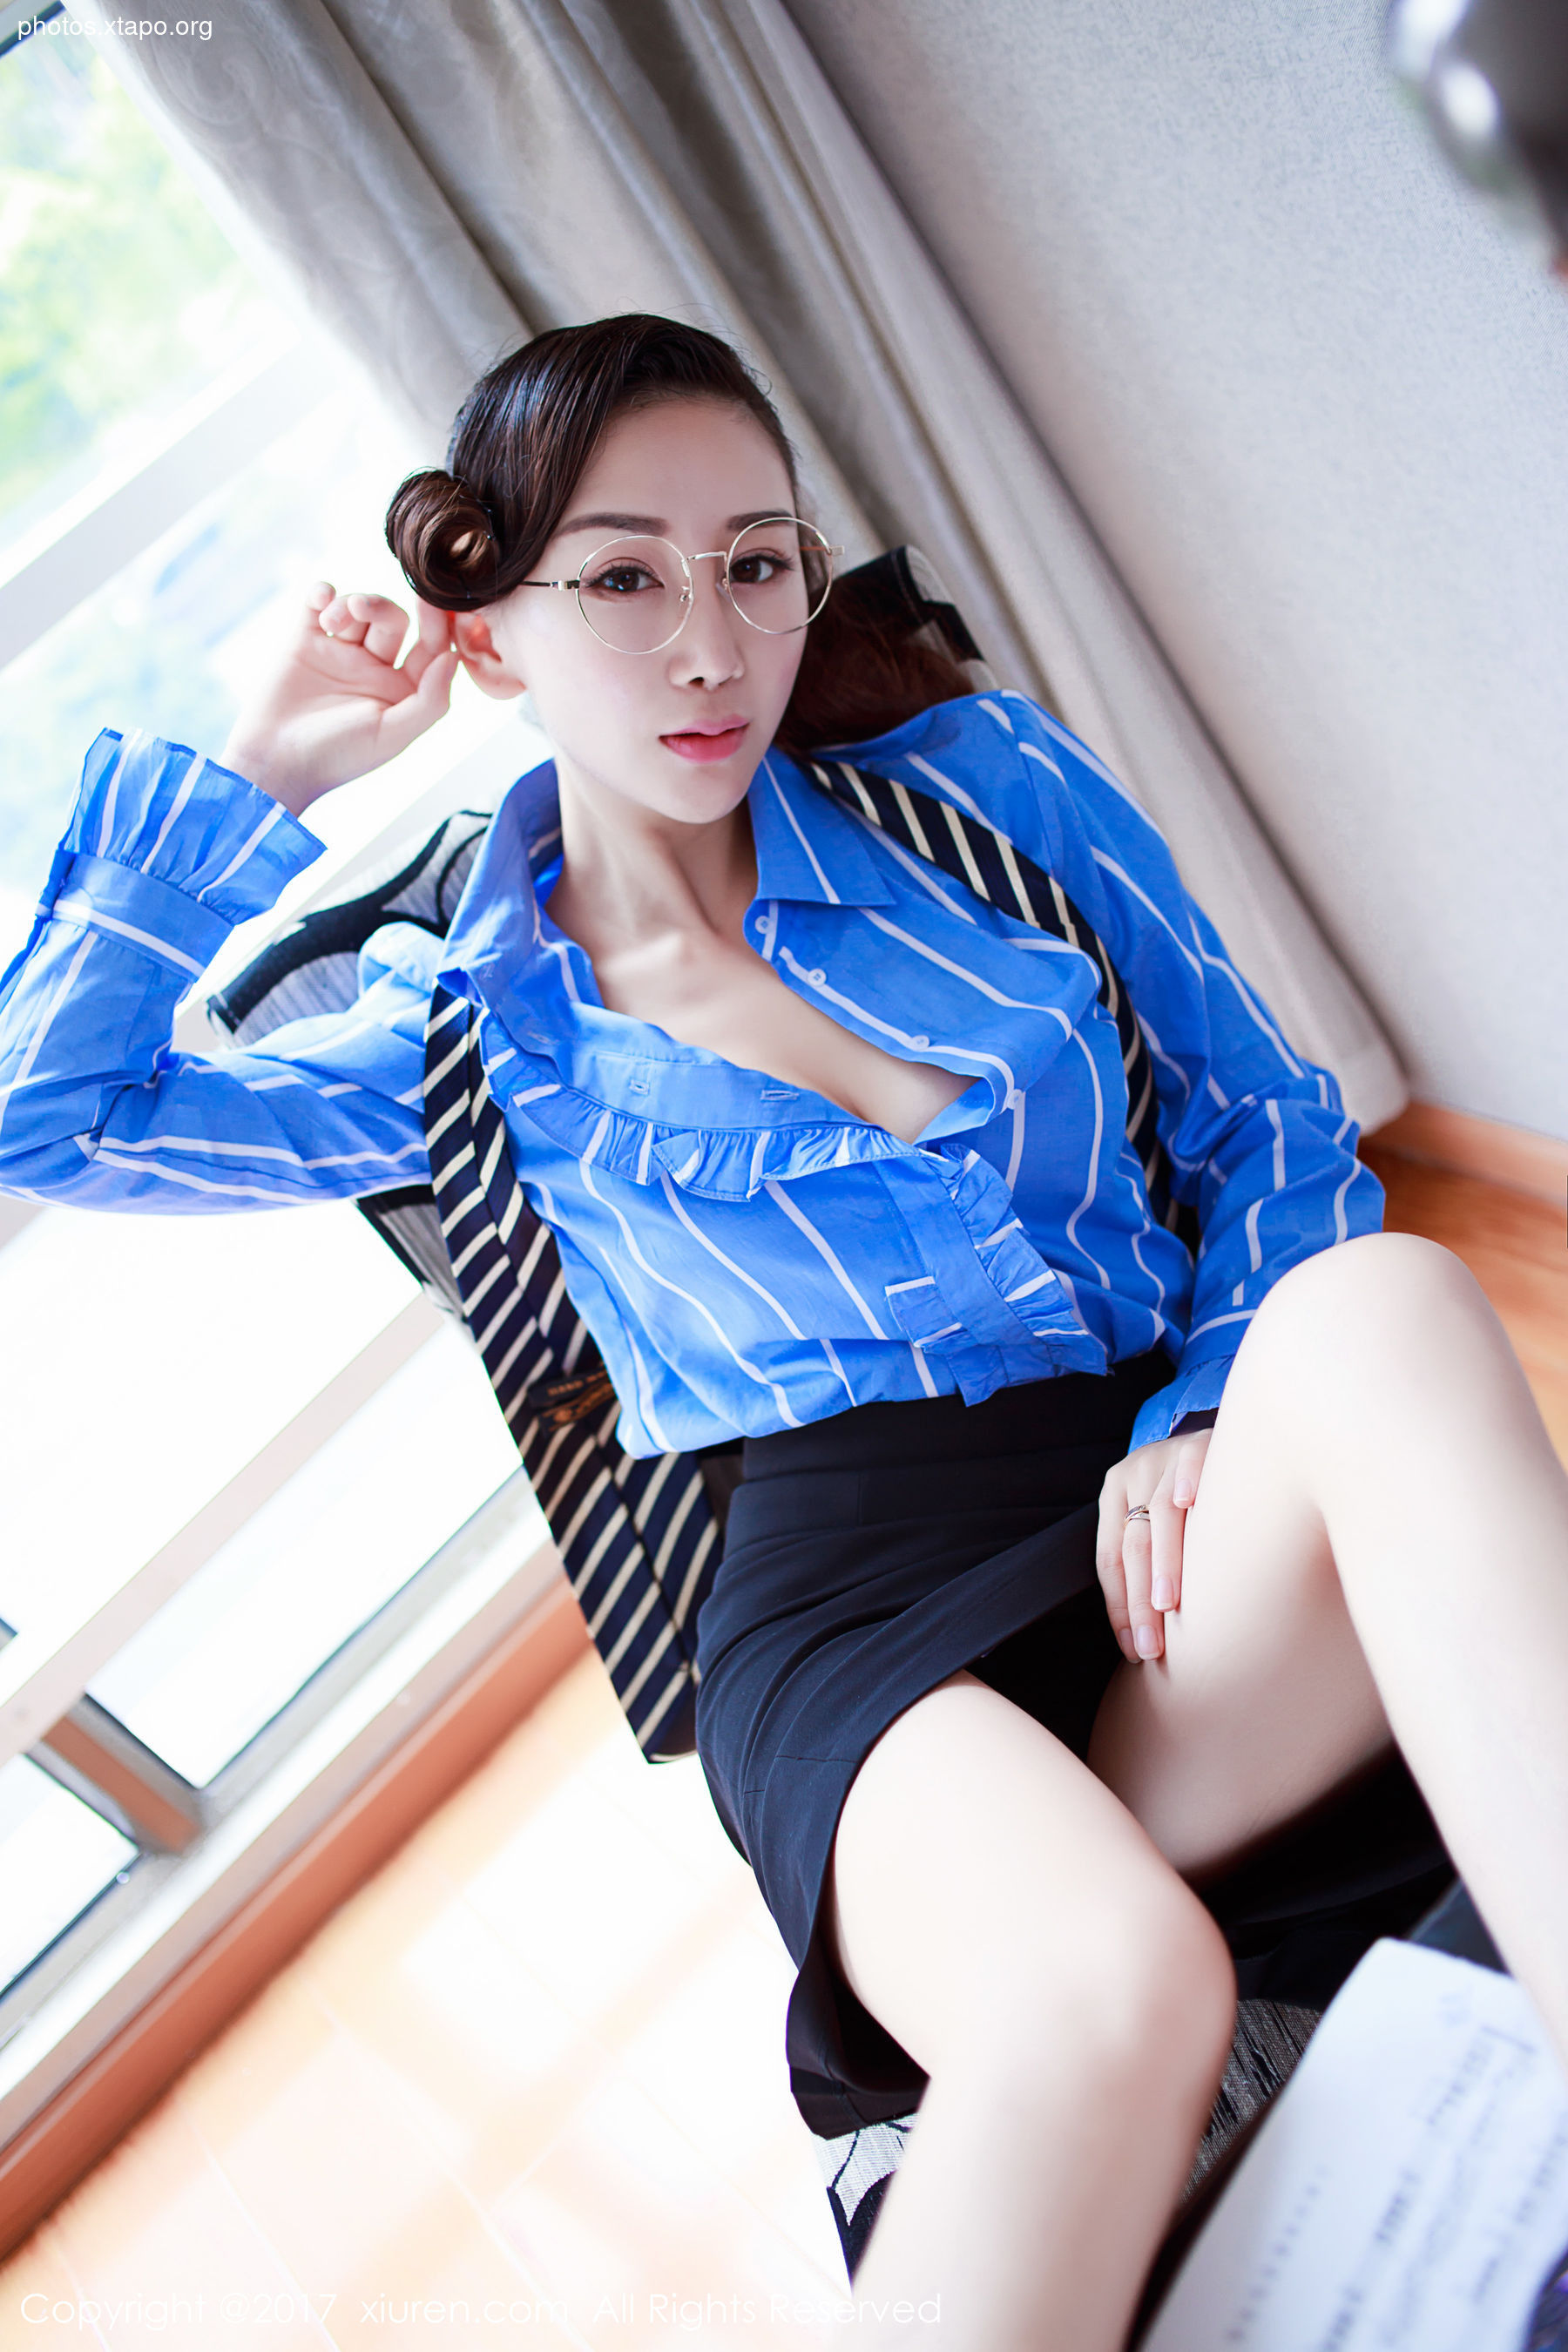 Sexy Goddess@性 性 性 Teacher OL Xiuren No.852